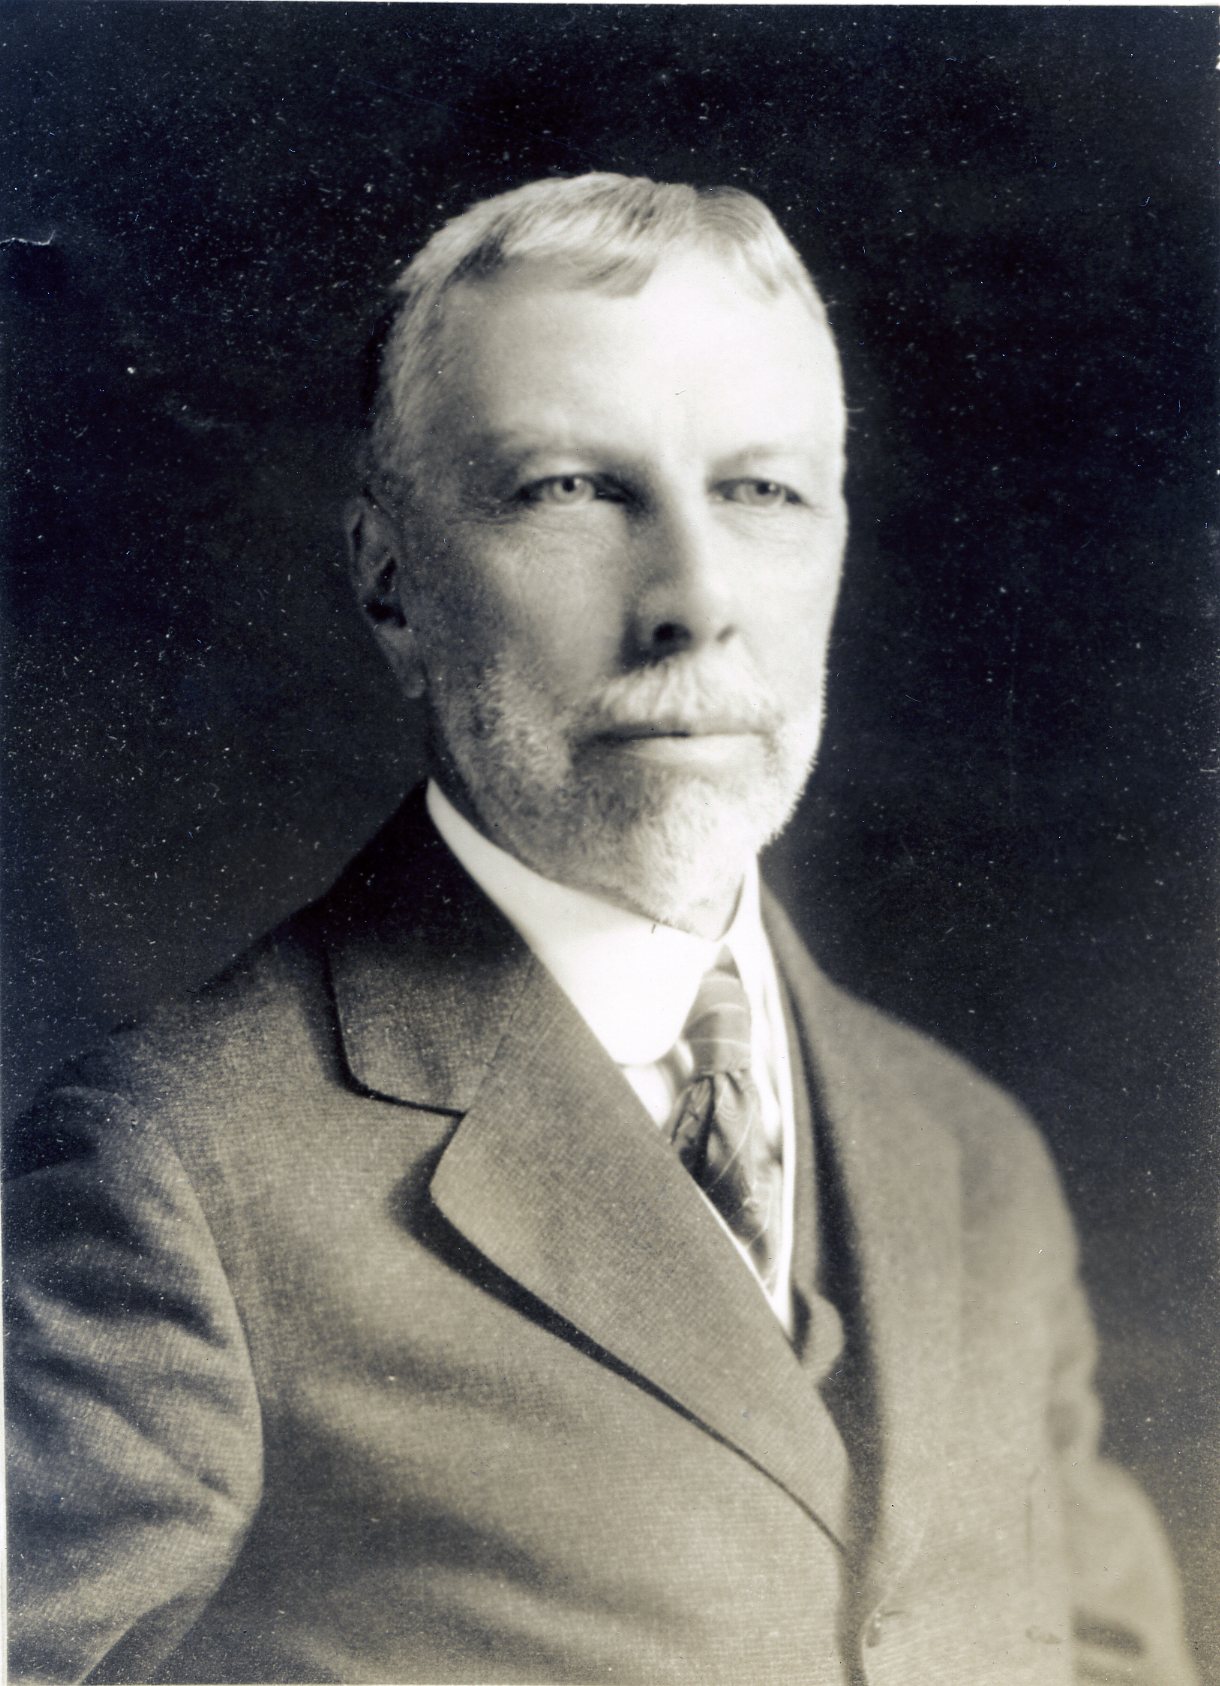 Member portrait of Arthur T. Hadley